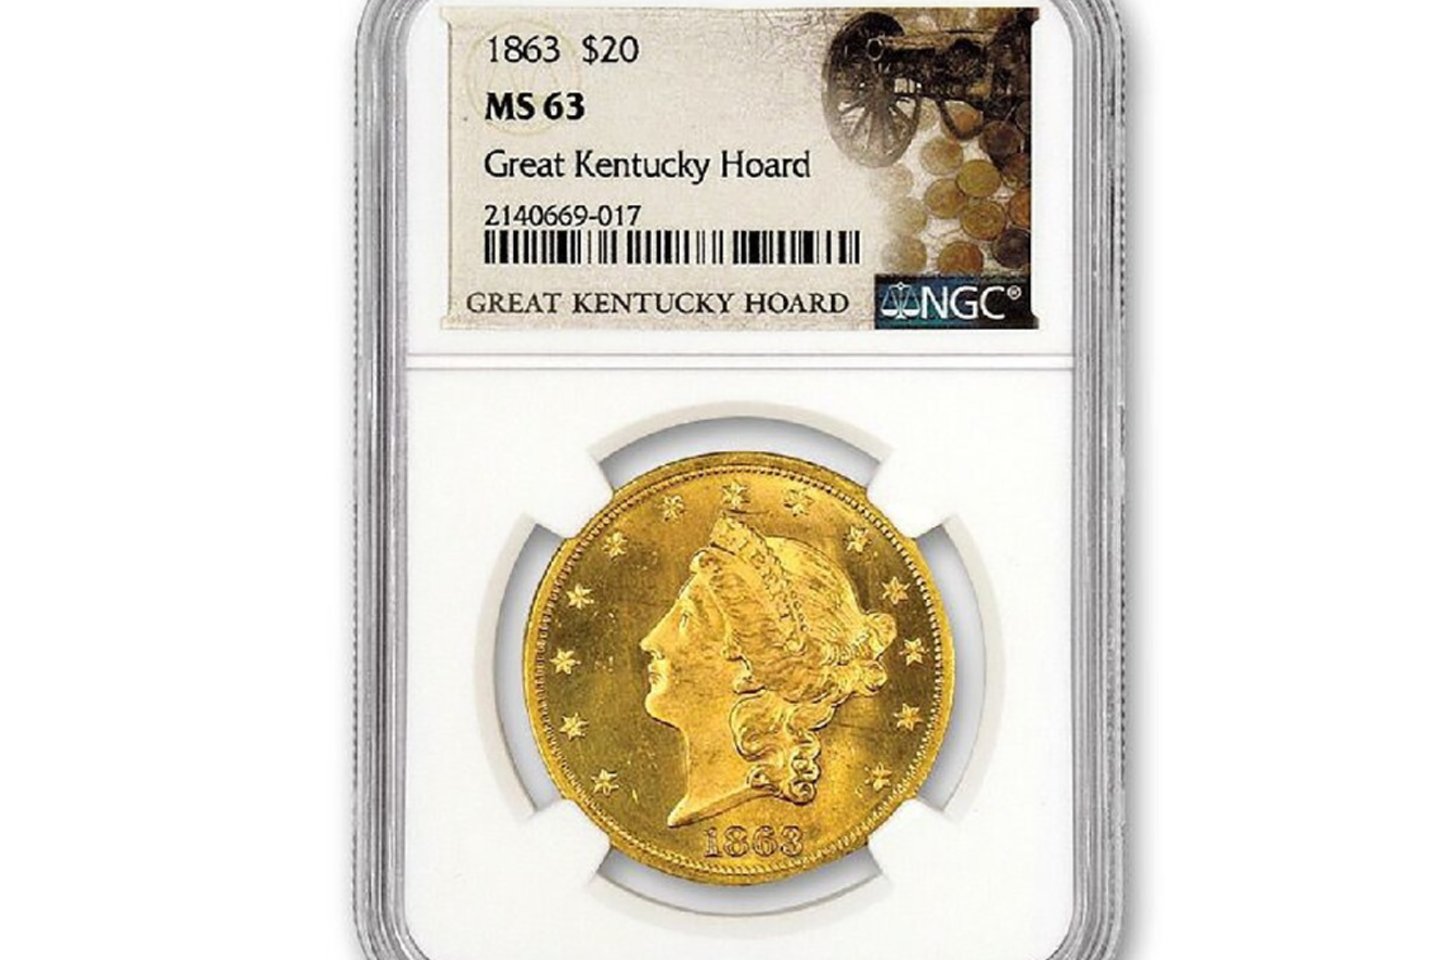  Šioje GovMint.com pateiktoje nuotraukoje pavaizduota Kentukio kukurūzų lauke rasta 1863 m. 20 JAV dolerių auksinė „Liberty“ moneta.<br> GovMint.com nuotr.